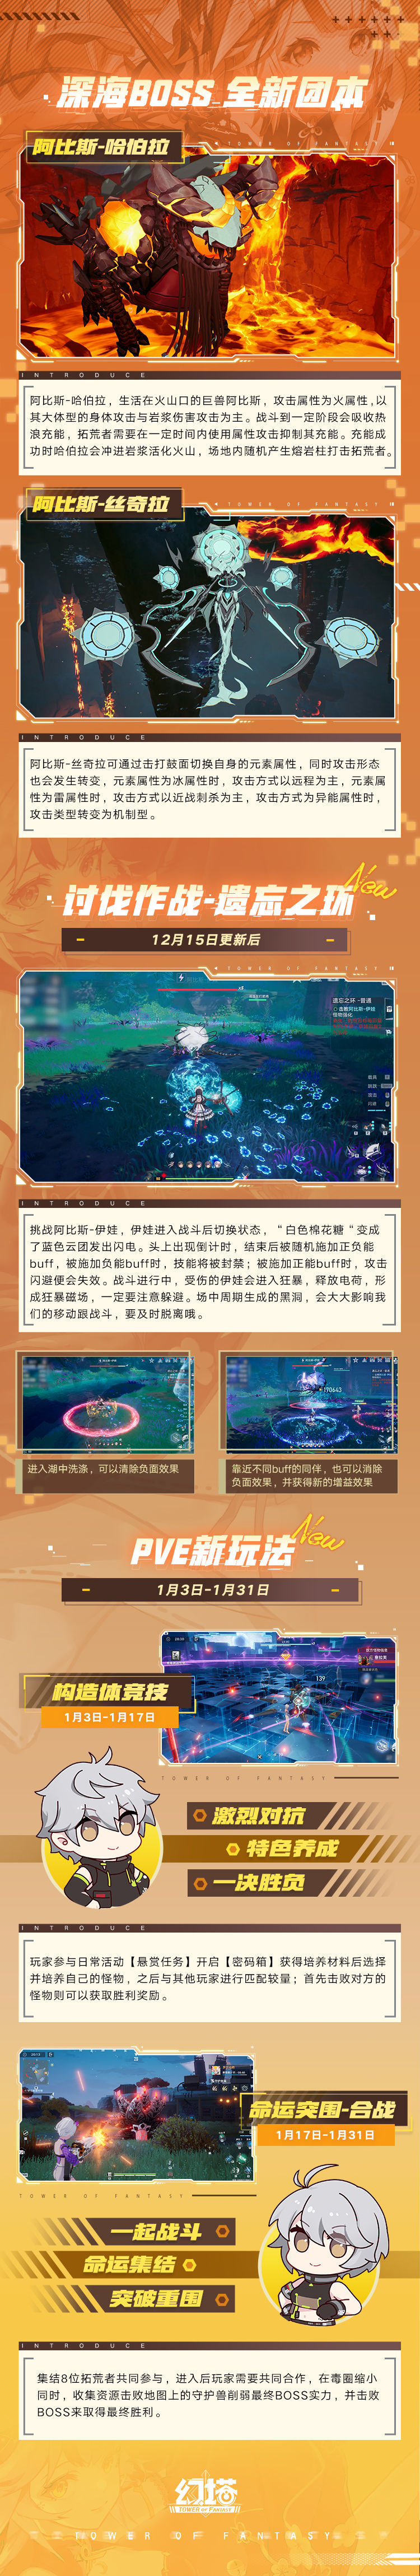 《幻塔》2.4版本「绮海逐行」将于12月15日上线